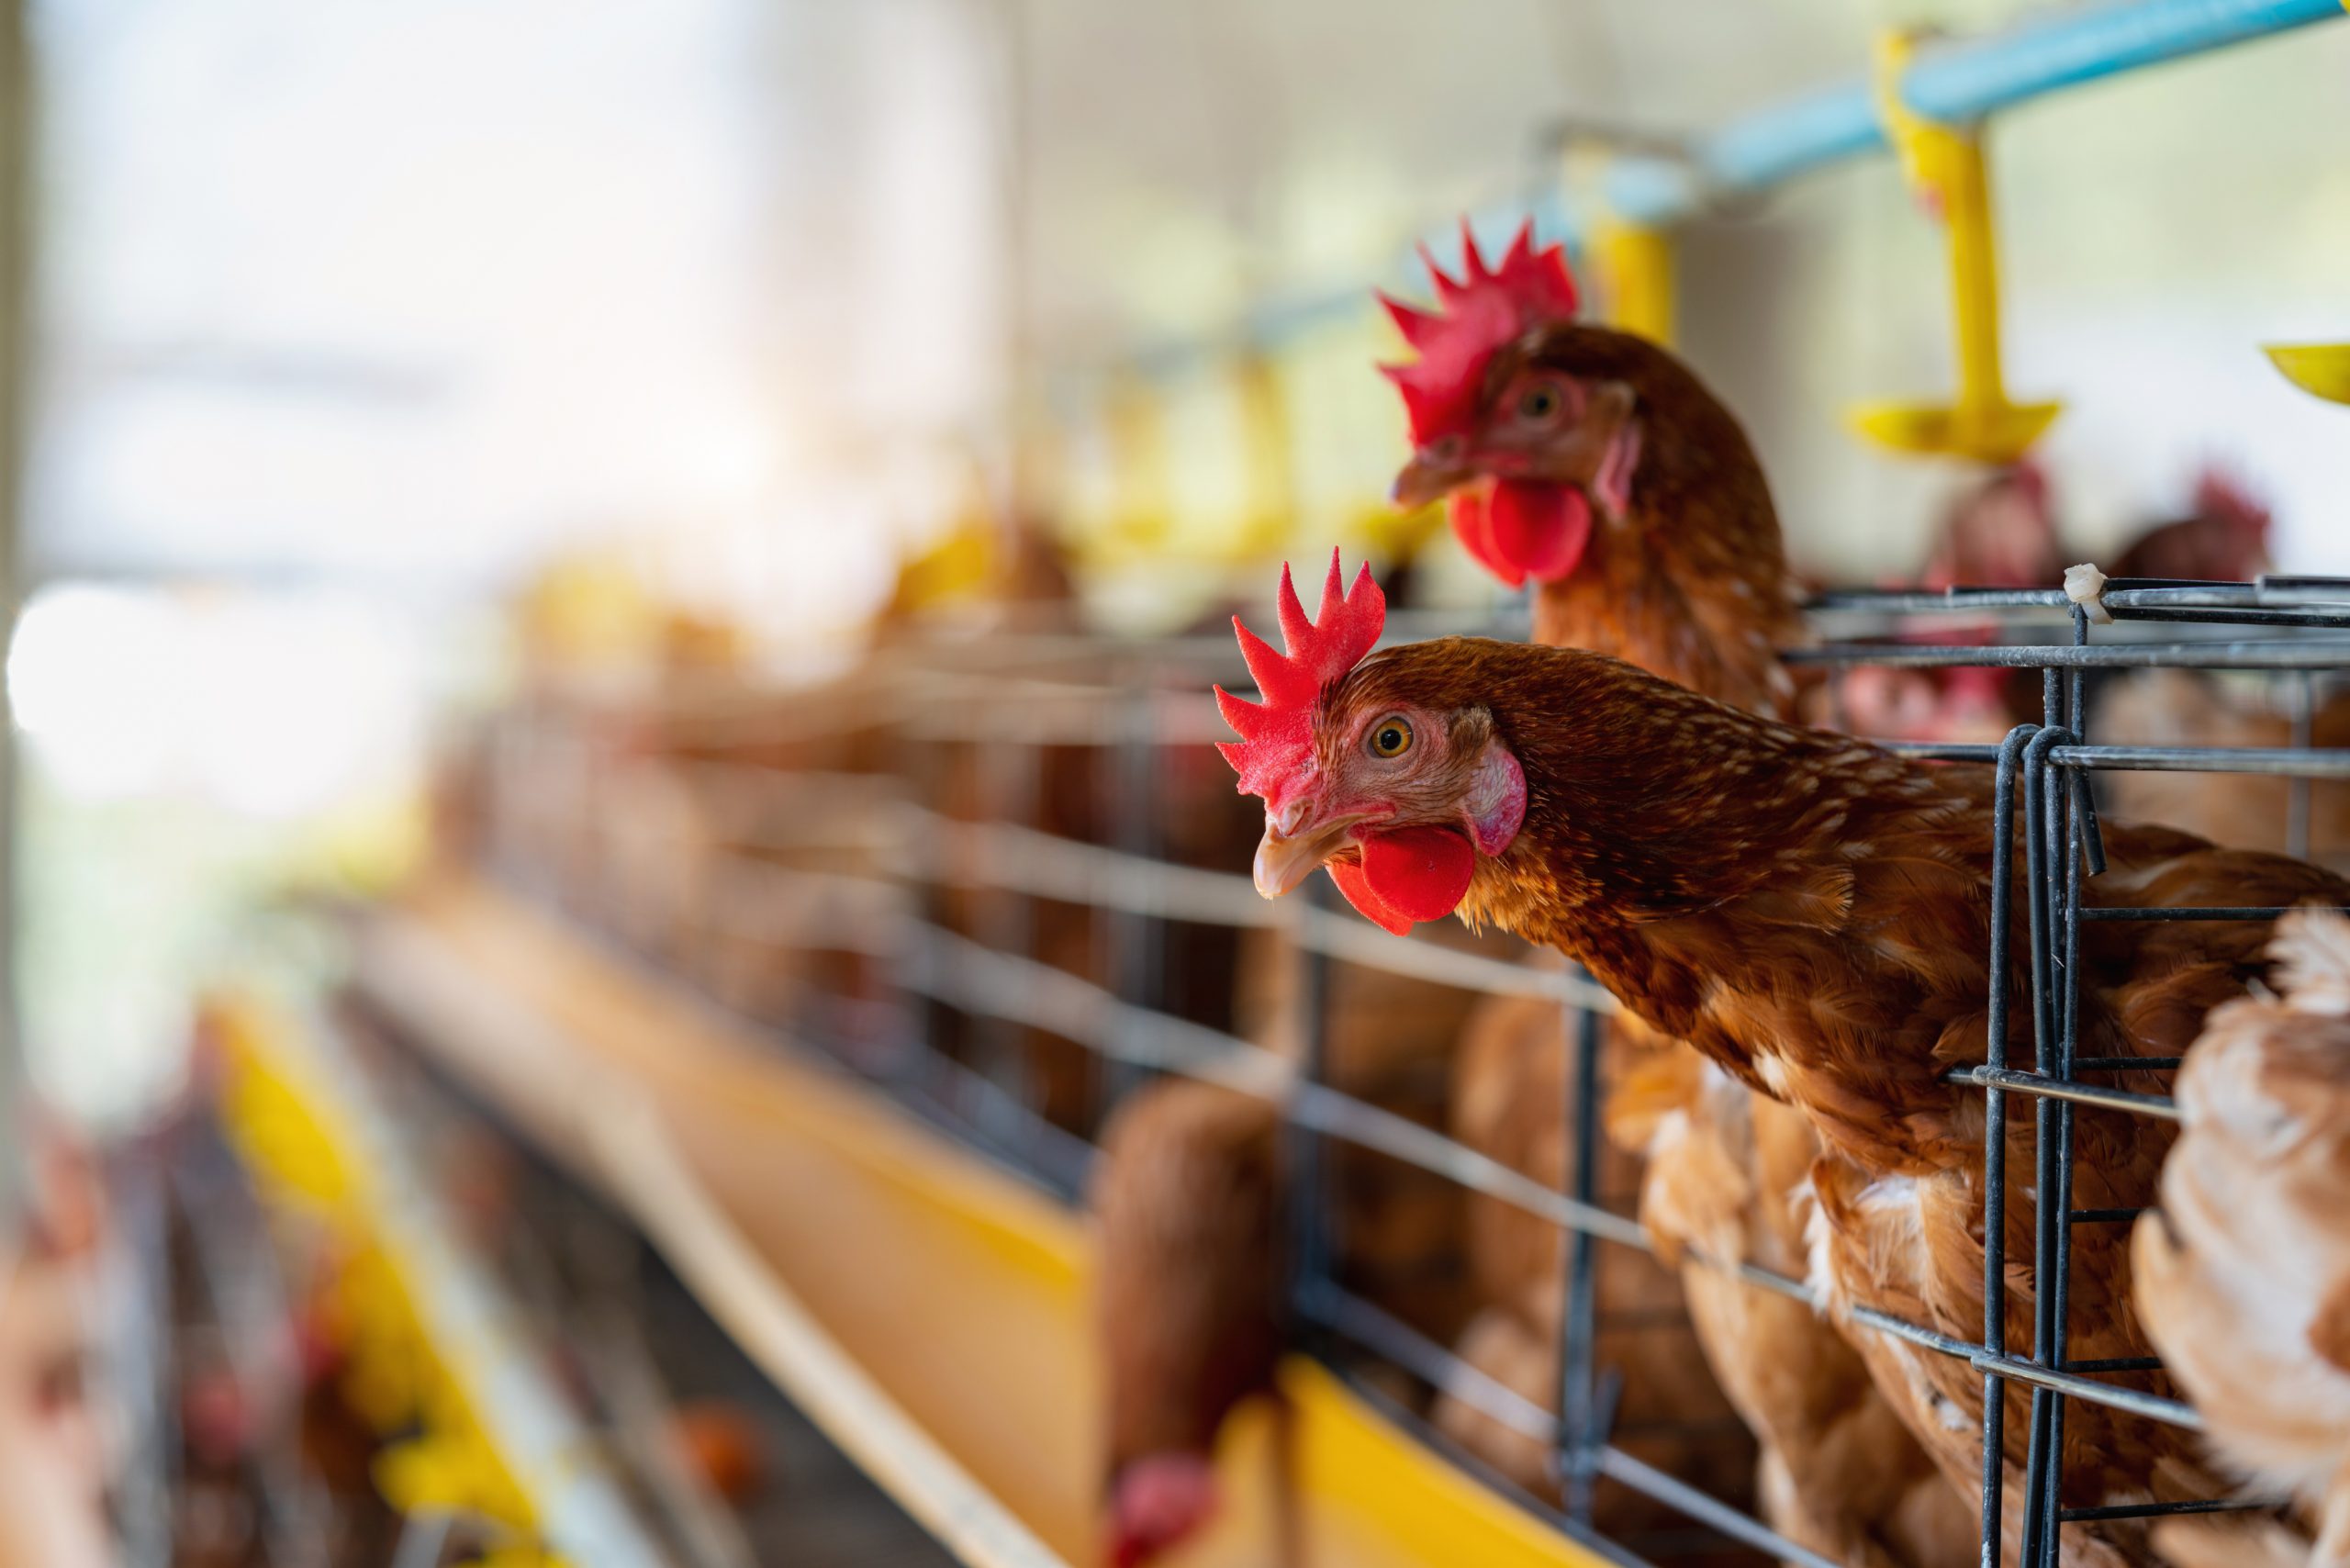 H5 Avian Flu in Two Poultry Employees